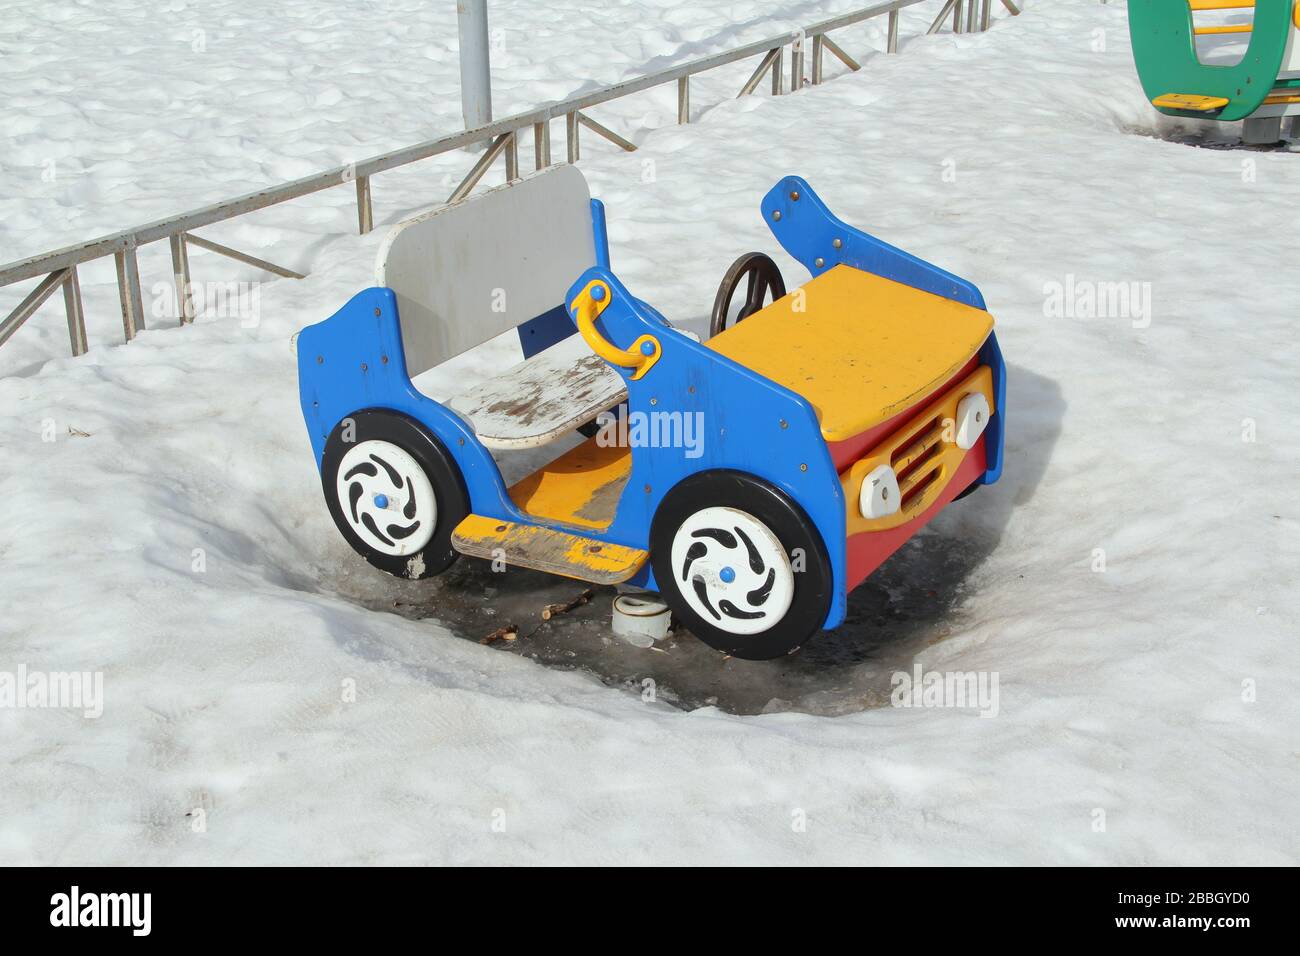 Kinderschaukel in Form eines Autos auf dem Spielplatz vor dem Hintergrund winterlicher Schneeverwehungen. Konzept für Kinderunterhaltung und Straßenspiele. Stock-Foto für Web und Druck mit leerem Platz für Text. Stockfoto